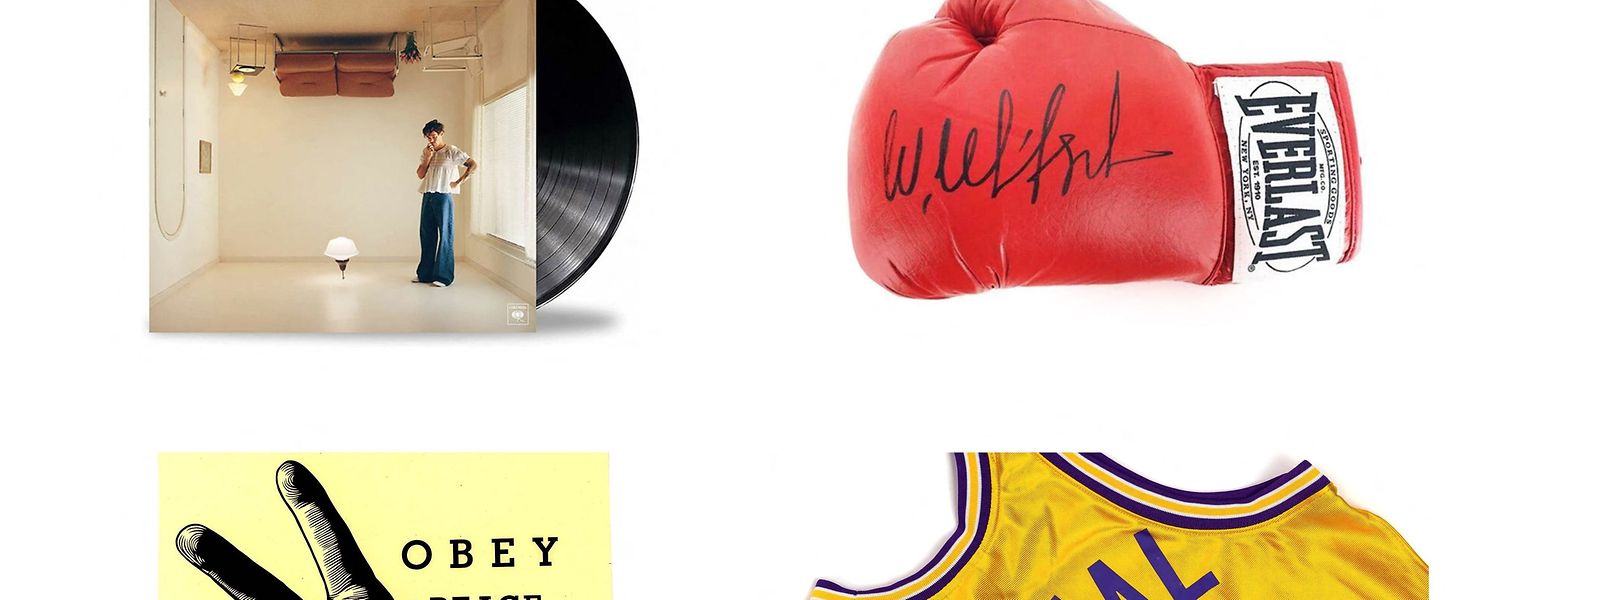 Un vinyle de Harry Styles, un gant de boxe de Wladimir Klitschko, une œuvre de l'artiste Obey alias Sherpard Fairey ou bien encore un maillot de Shaquille O'Neal sont mis aux enchères. Et bien d'autres choses encore...